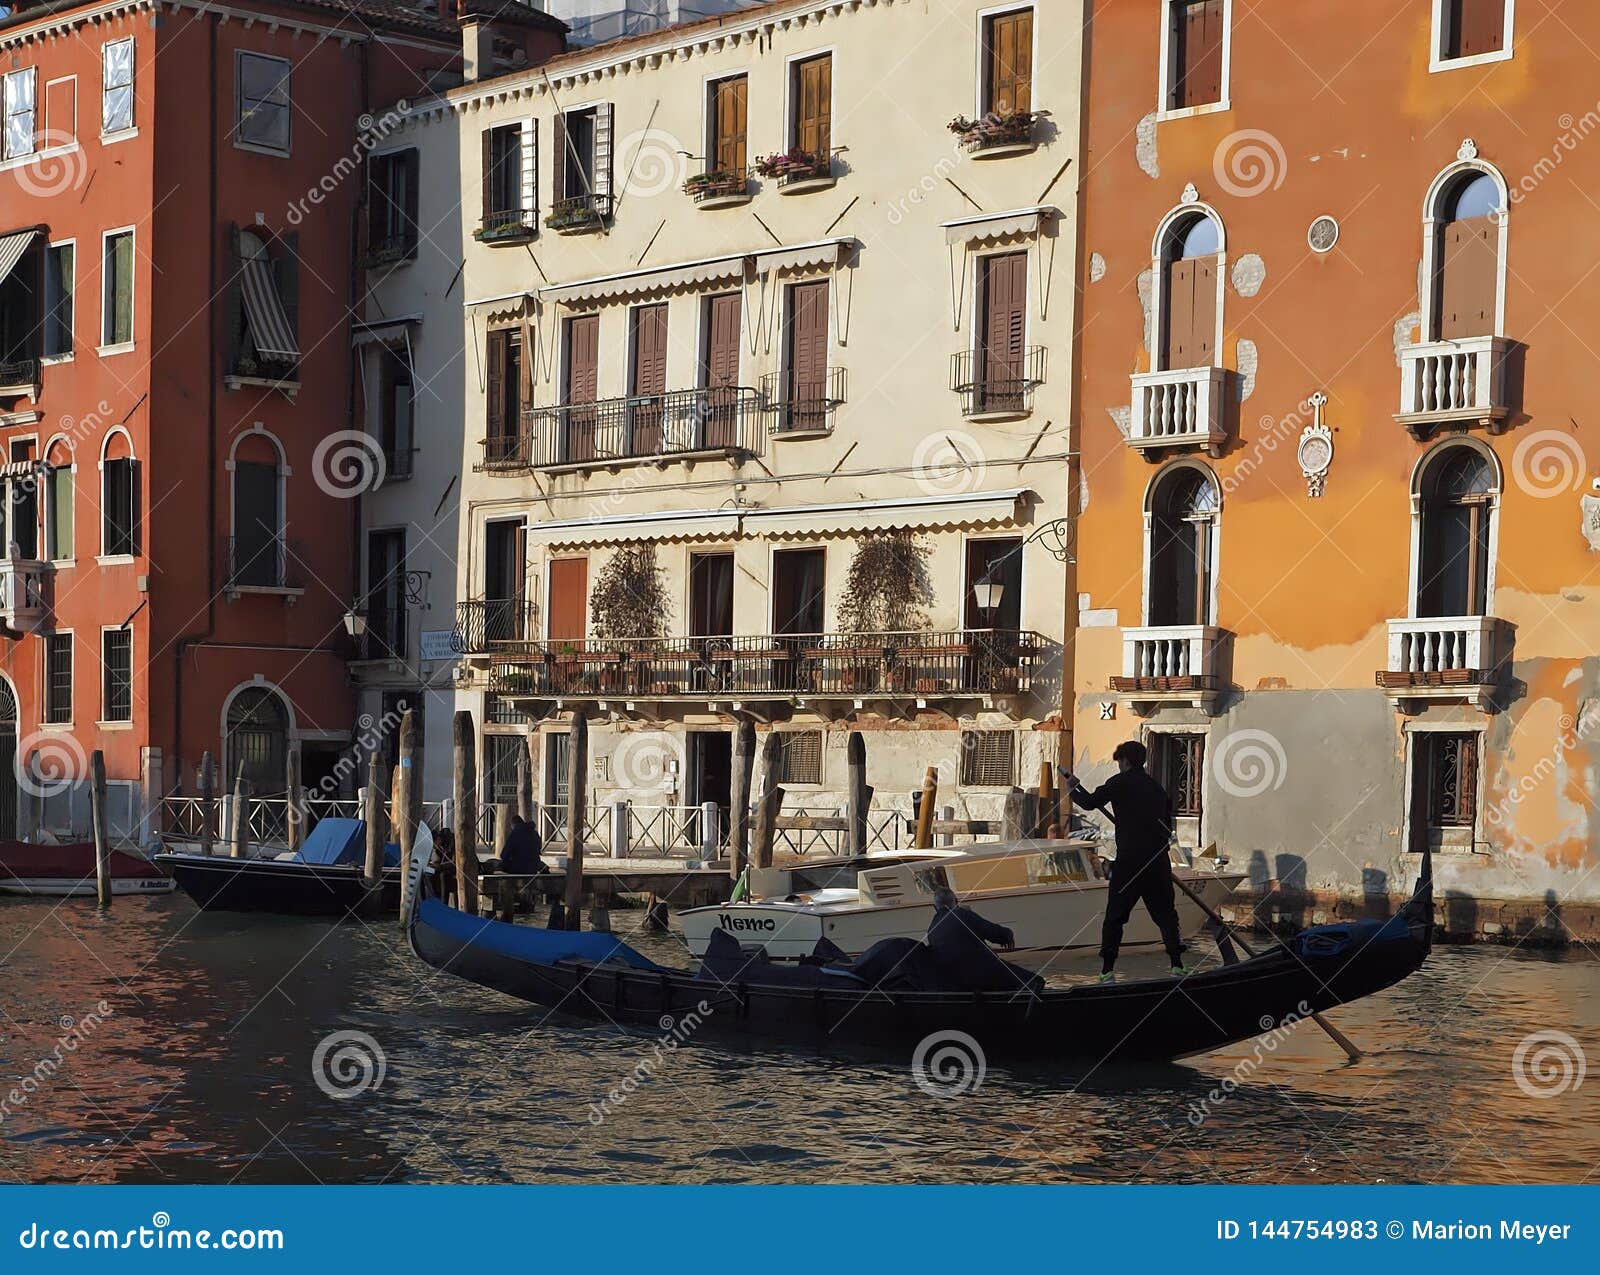 Embarquant au-dessus de la grande, belle architecture de Canale et des gondoles à Venise. Tout en embarquant sur le canal de diplômé à Venise, vous pouvez voir la belle architecture, les gondoles et l'eau bleue